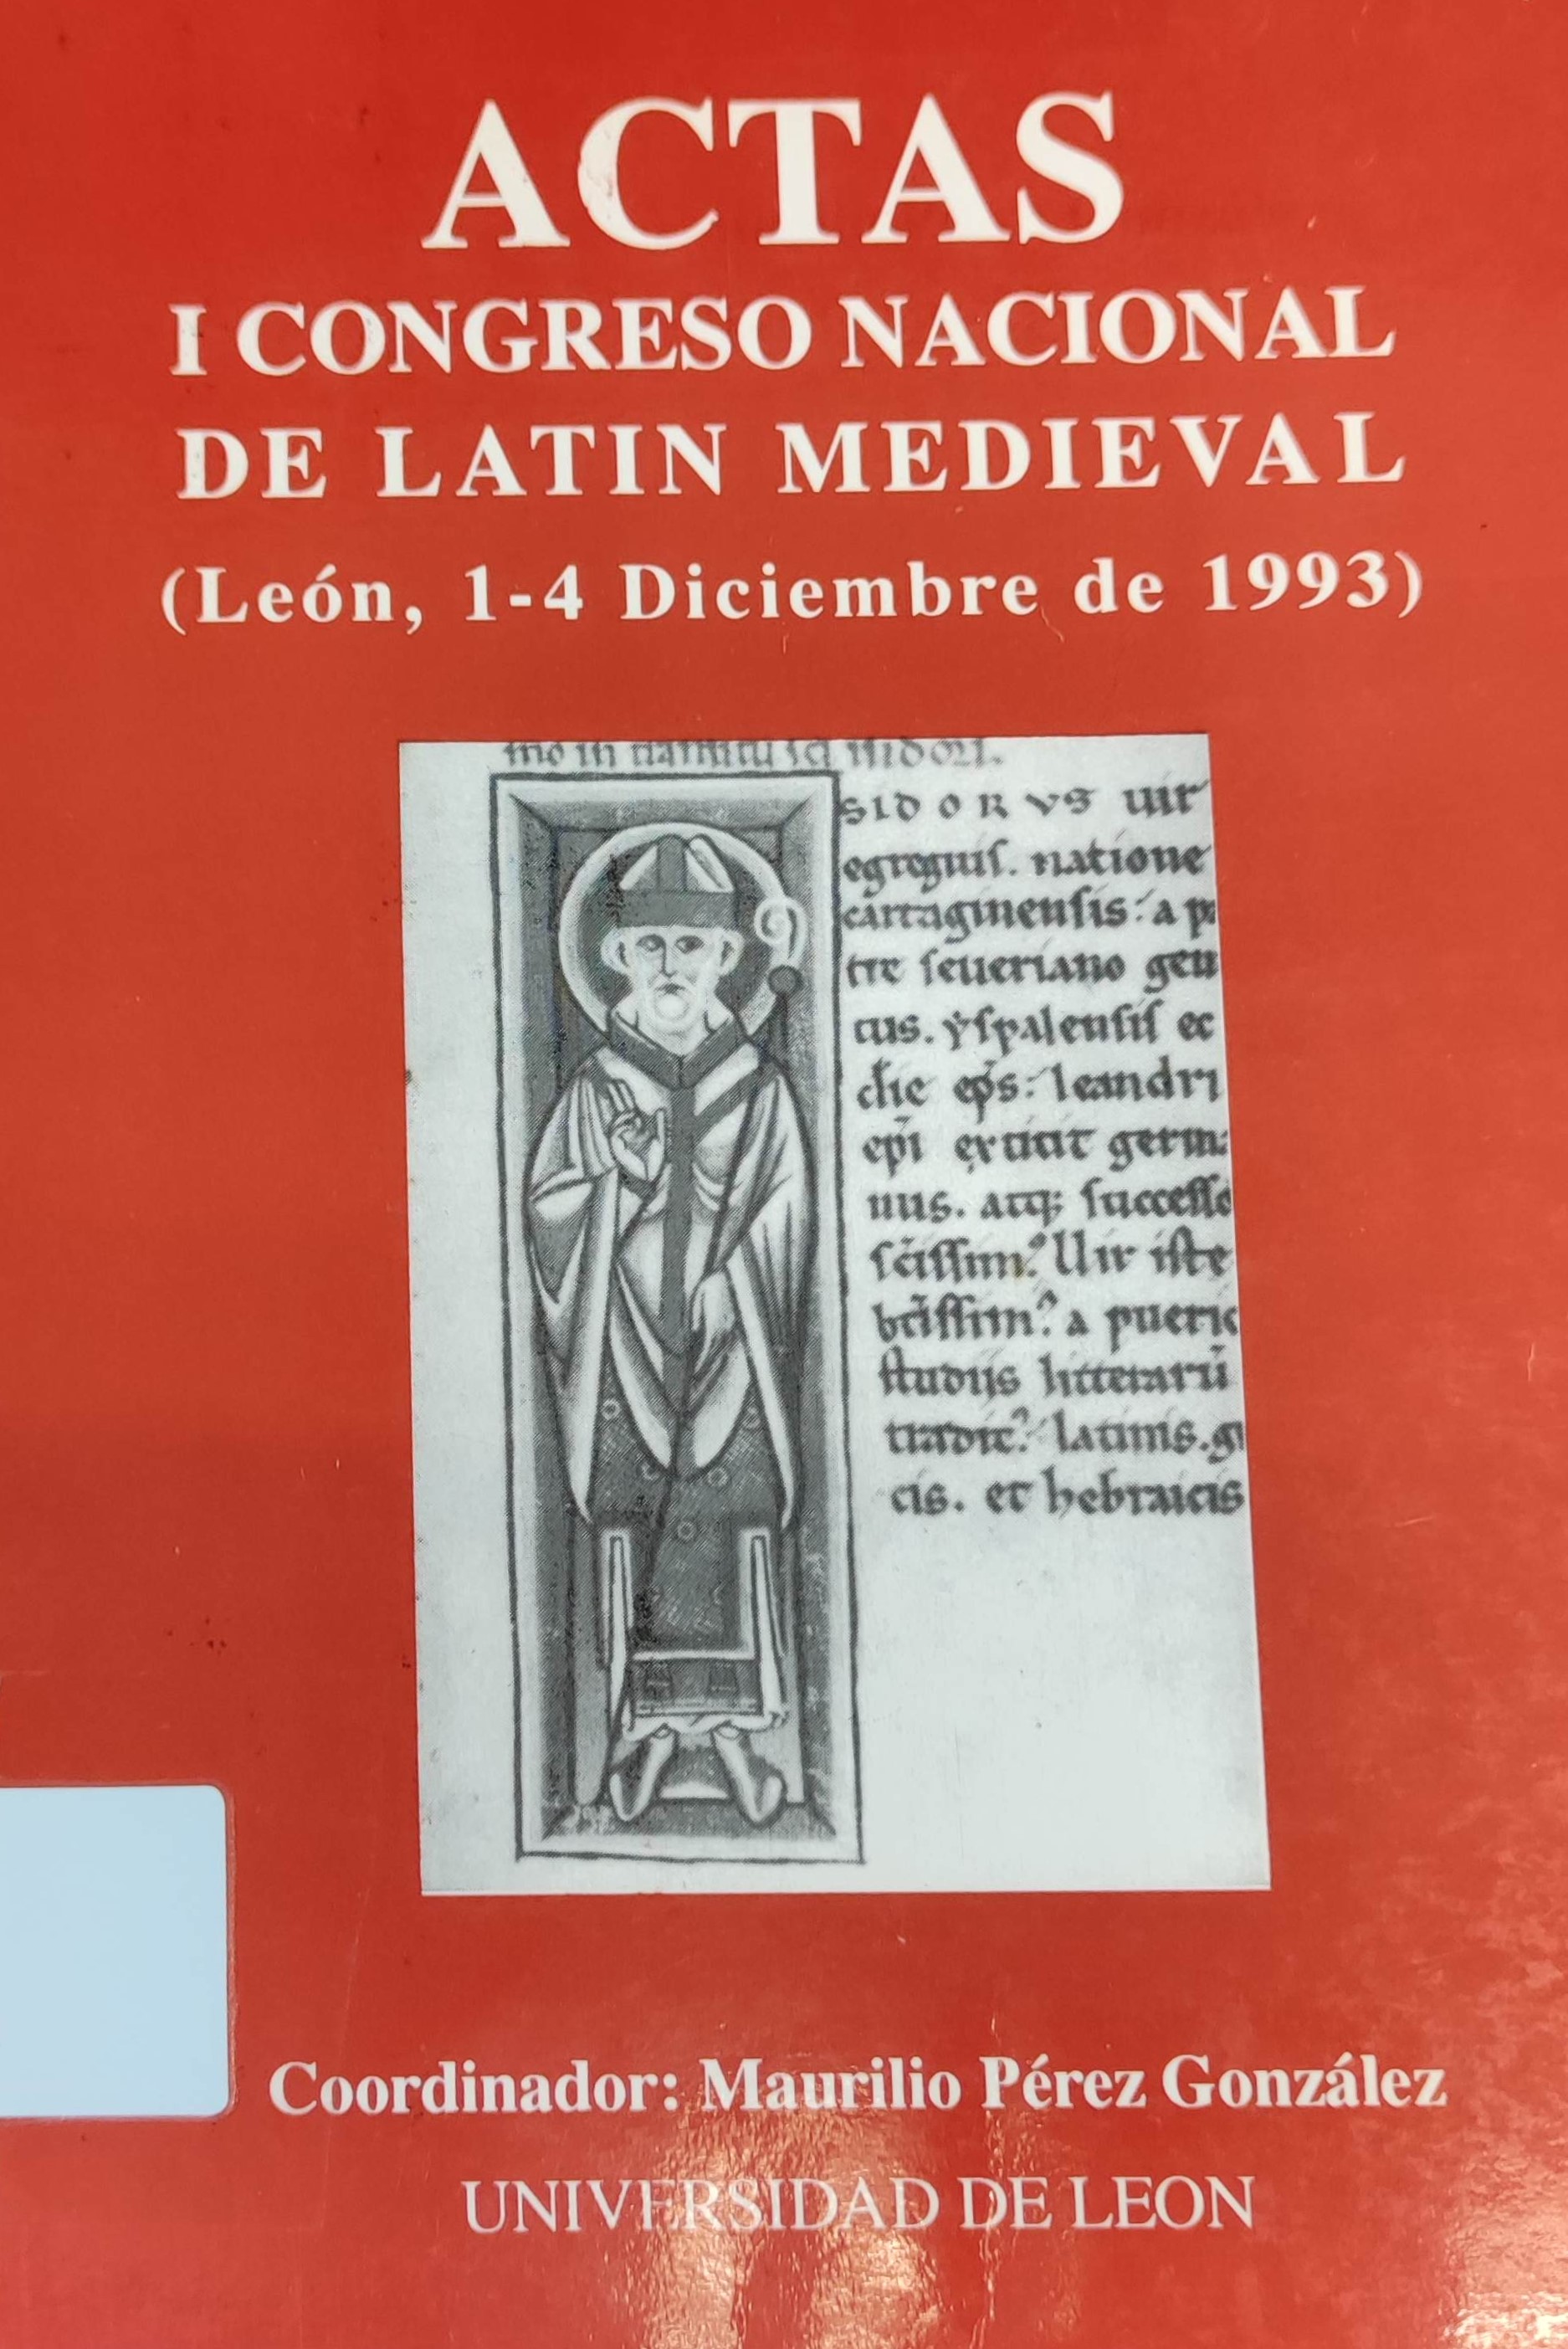 Imagen de portada del libro I Congreso Nacional de Latín Medieval